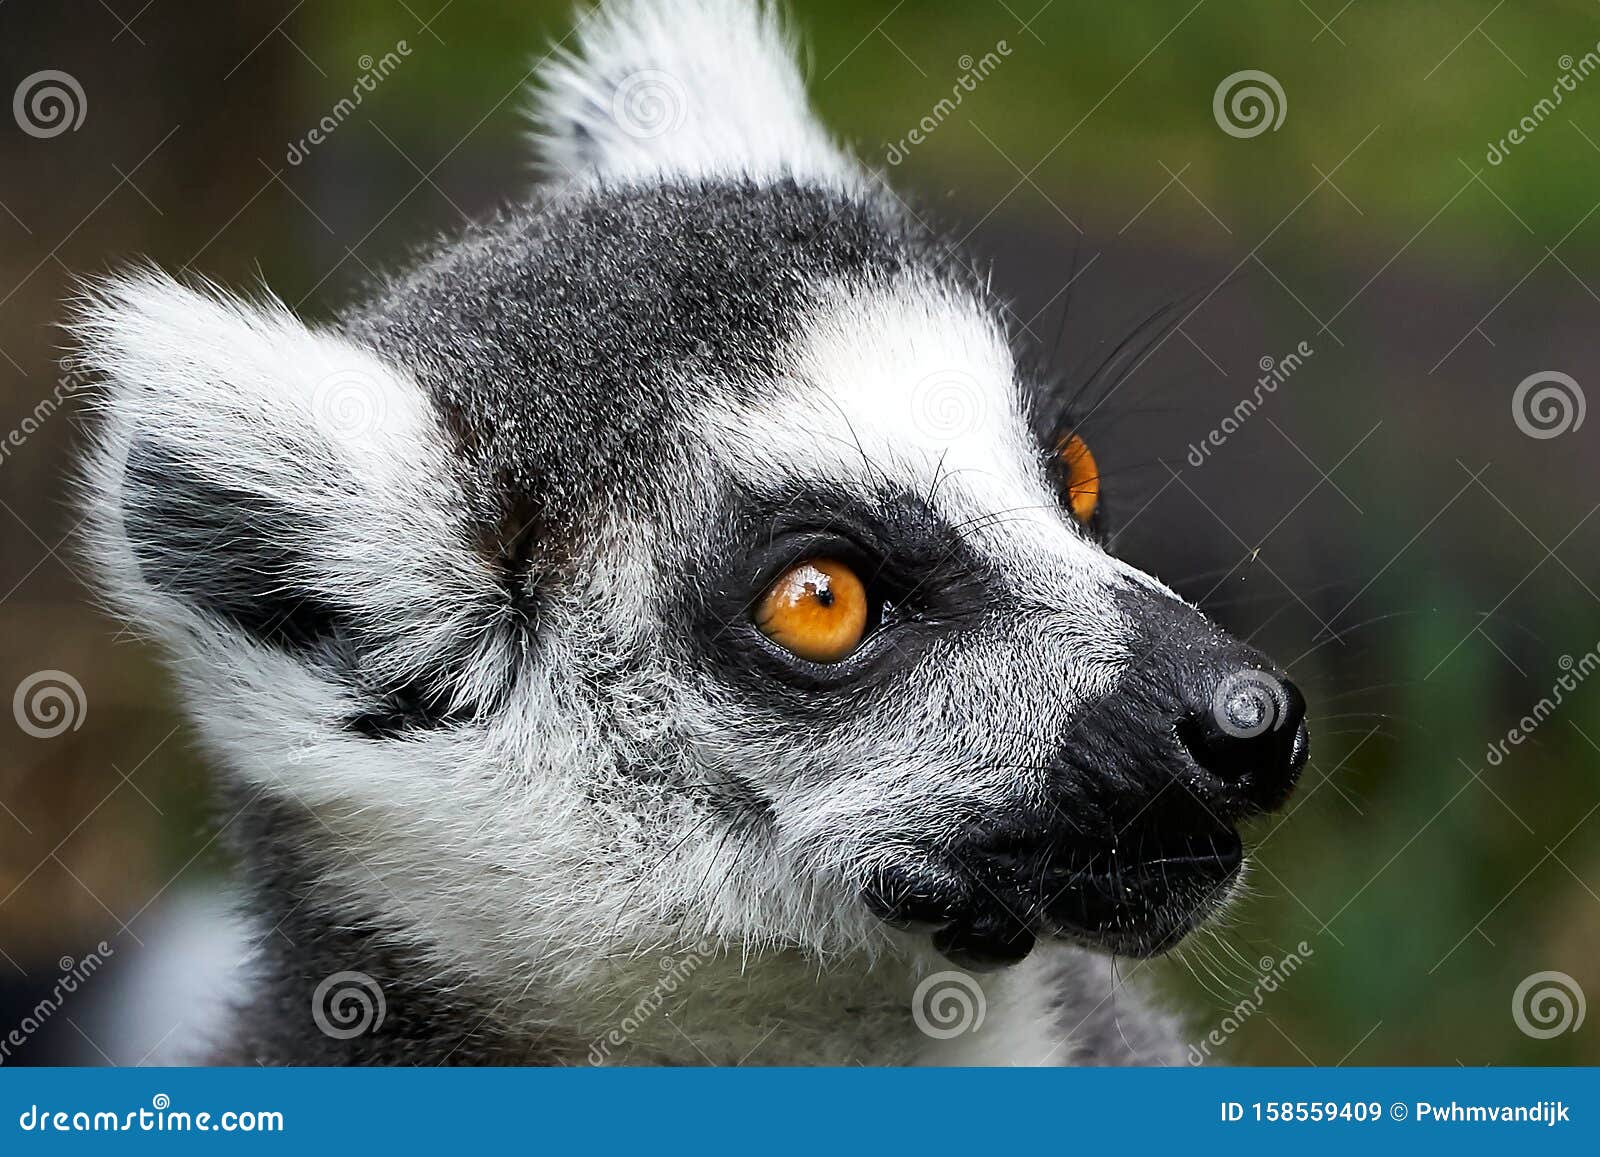 Lemur Catta Monkey Closeup Face Portrait Stock Image - Image of mouth,  portrait: 158559409